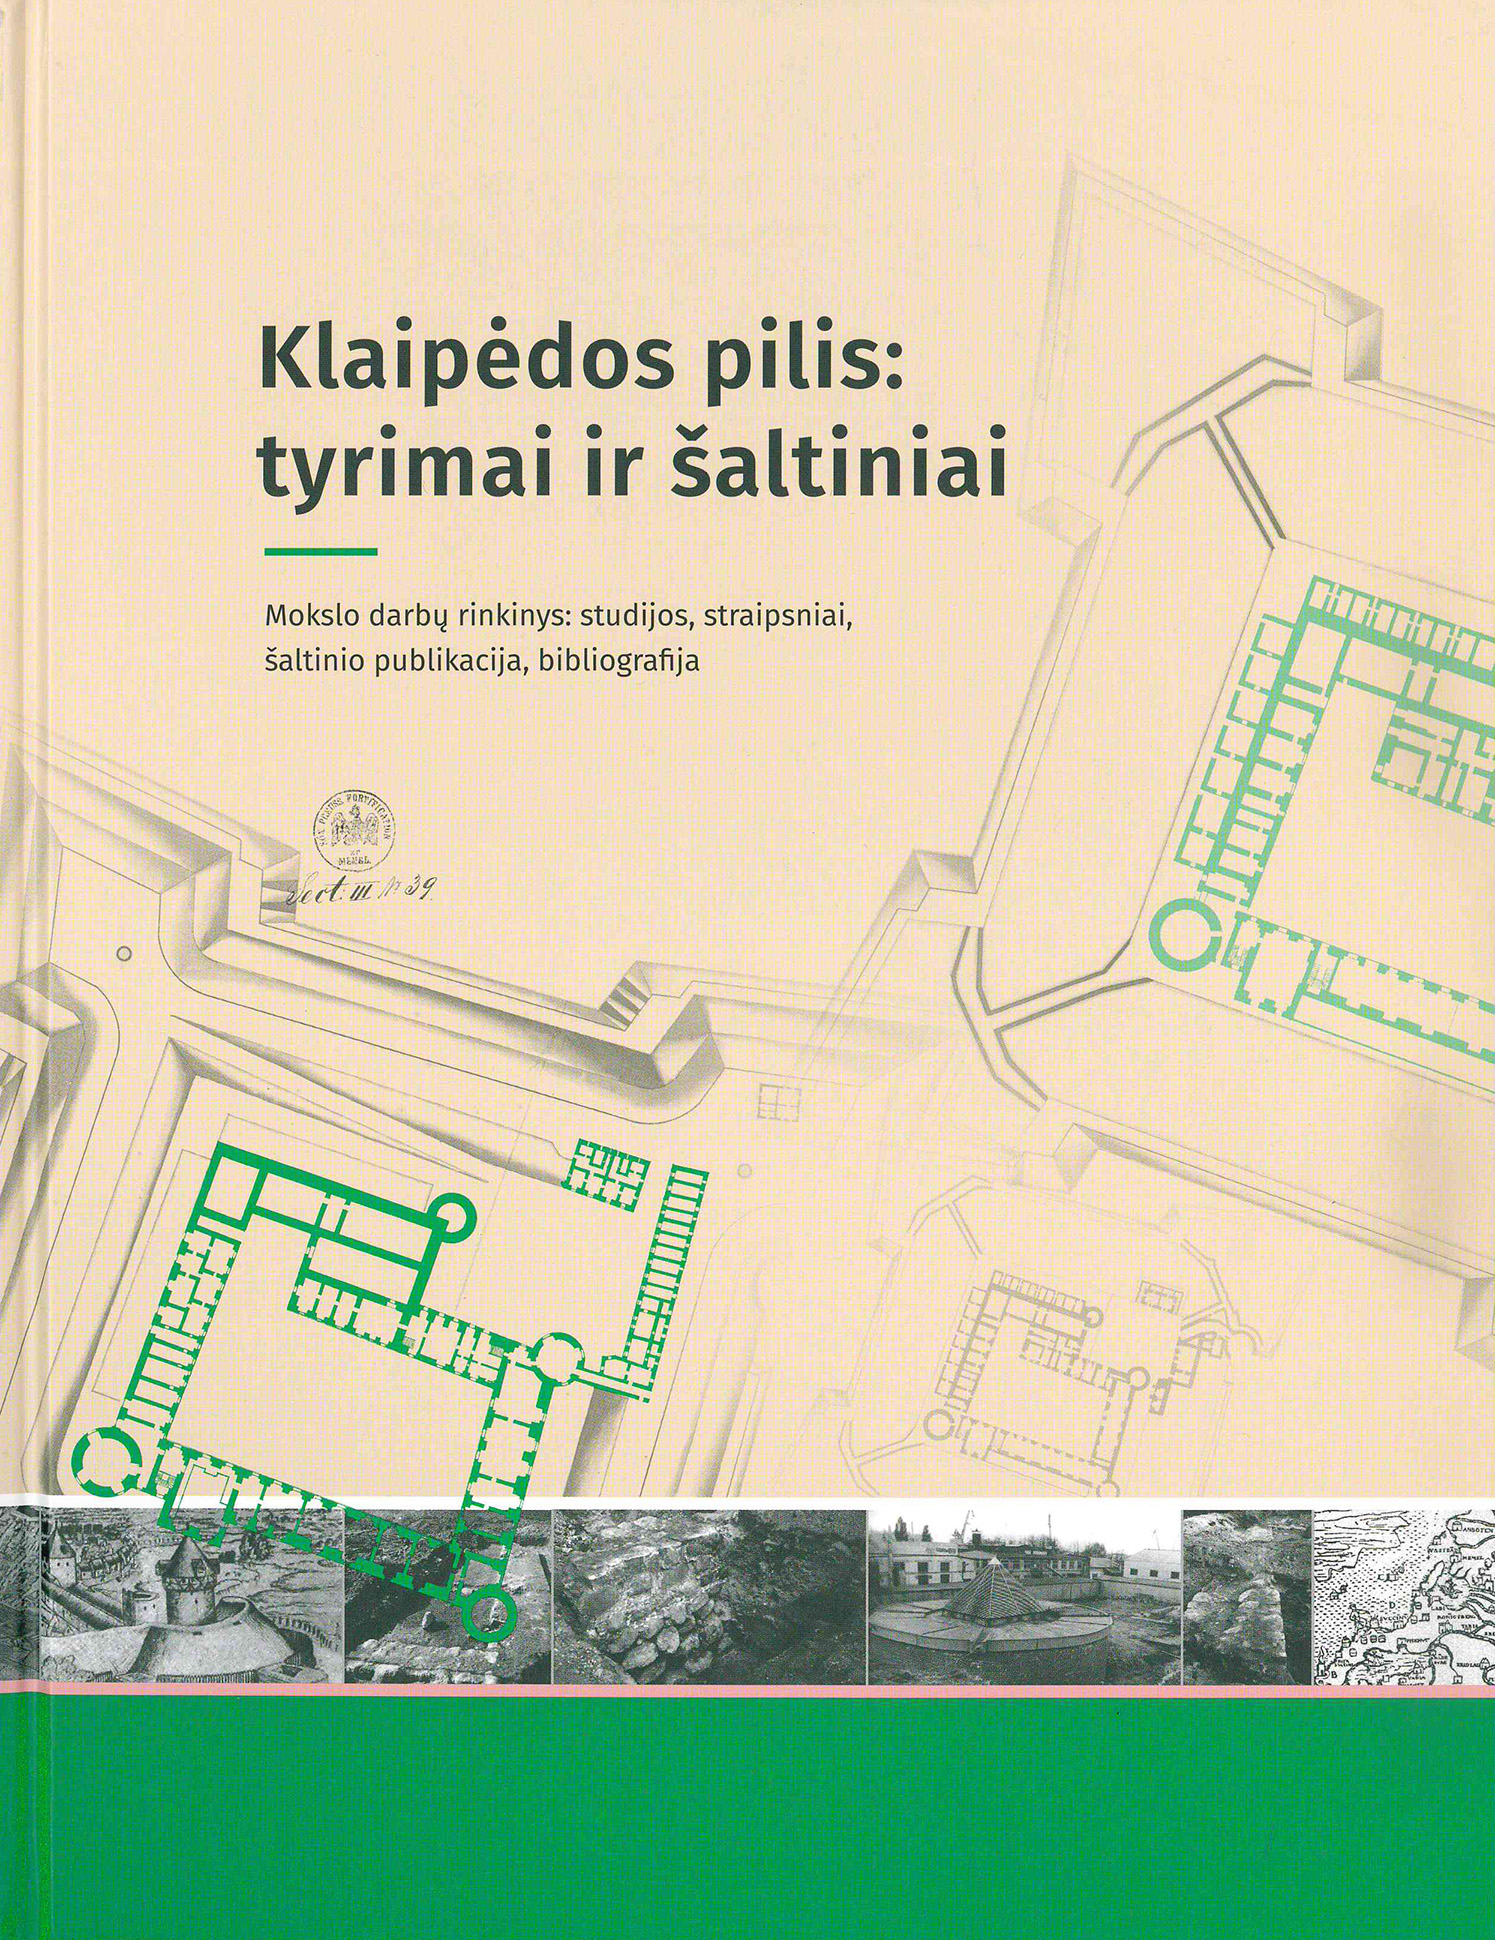 Pristatomas išskirtinis leidinys apie Klaipėdos pilį